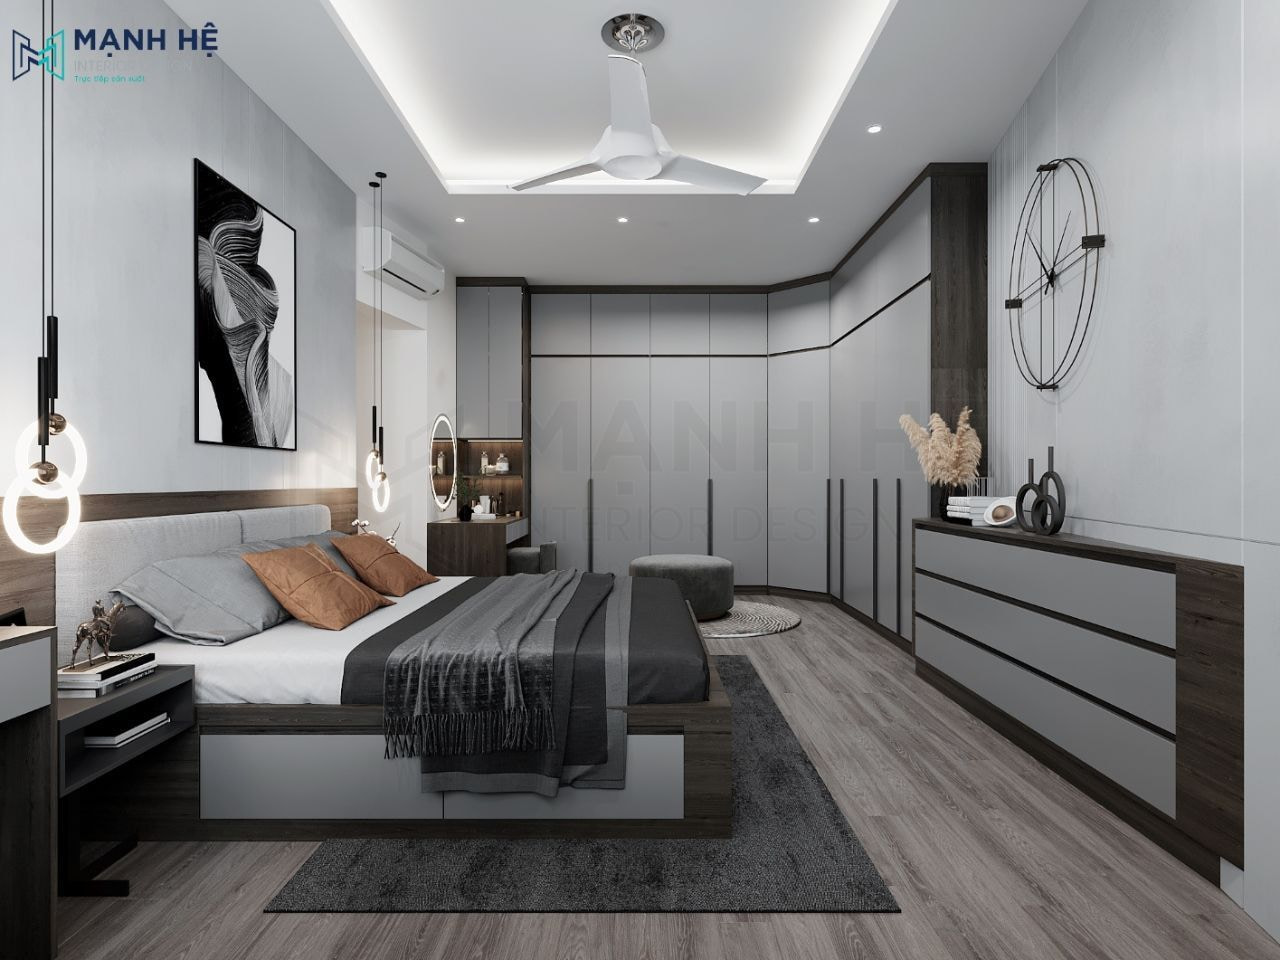 101+ Ý tưởng và mẫu trang trí phòng ngủ đẹp, đơn giản, tối ưu chi phí